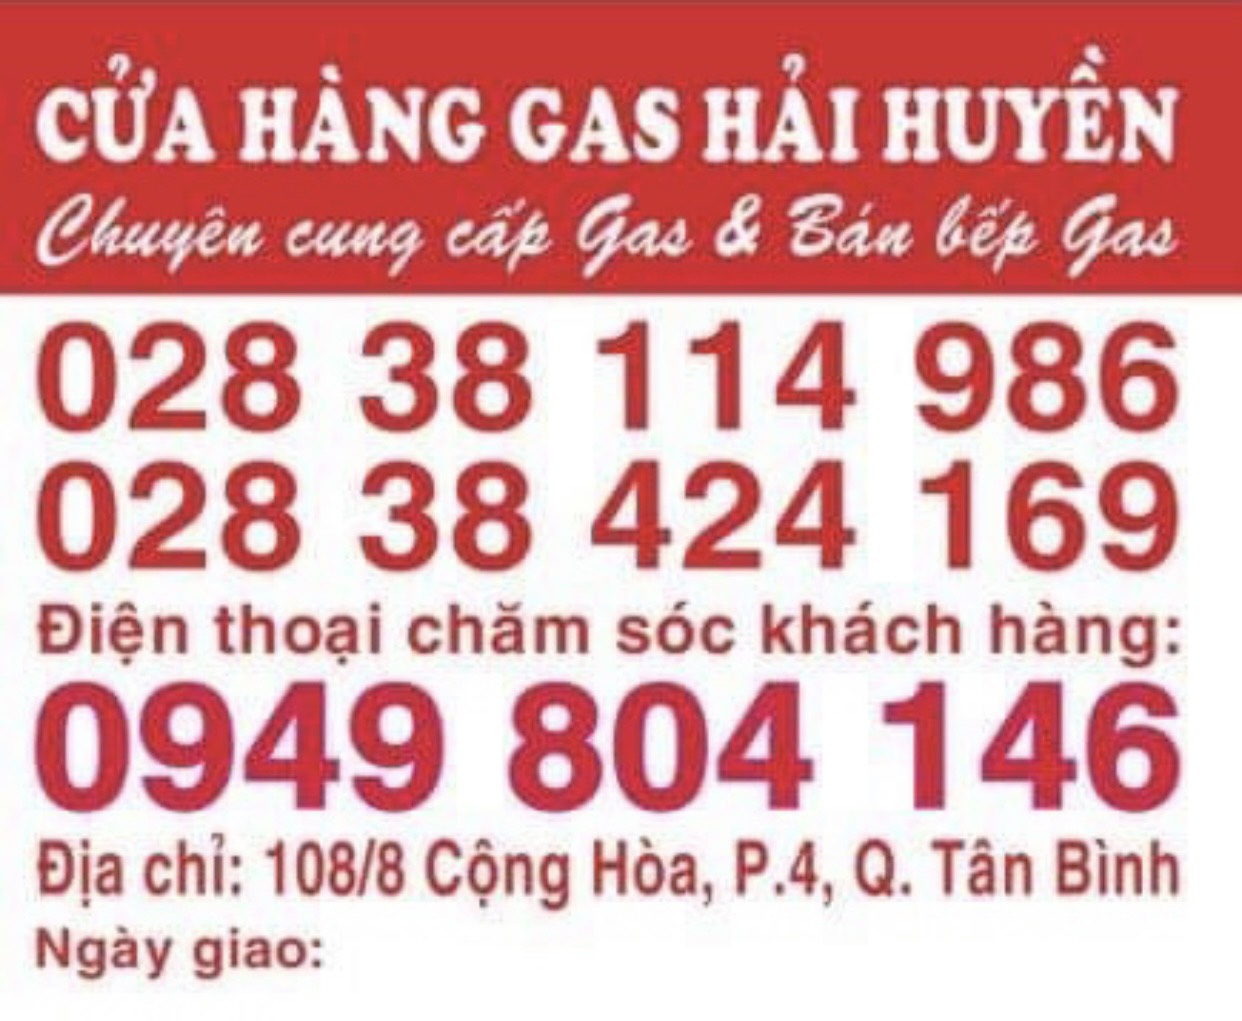 ĐẠI LÝ GAS HẢI HUYỀN chuyên cung cấp gas và bán bếp gas tại TPHCM